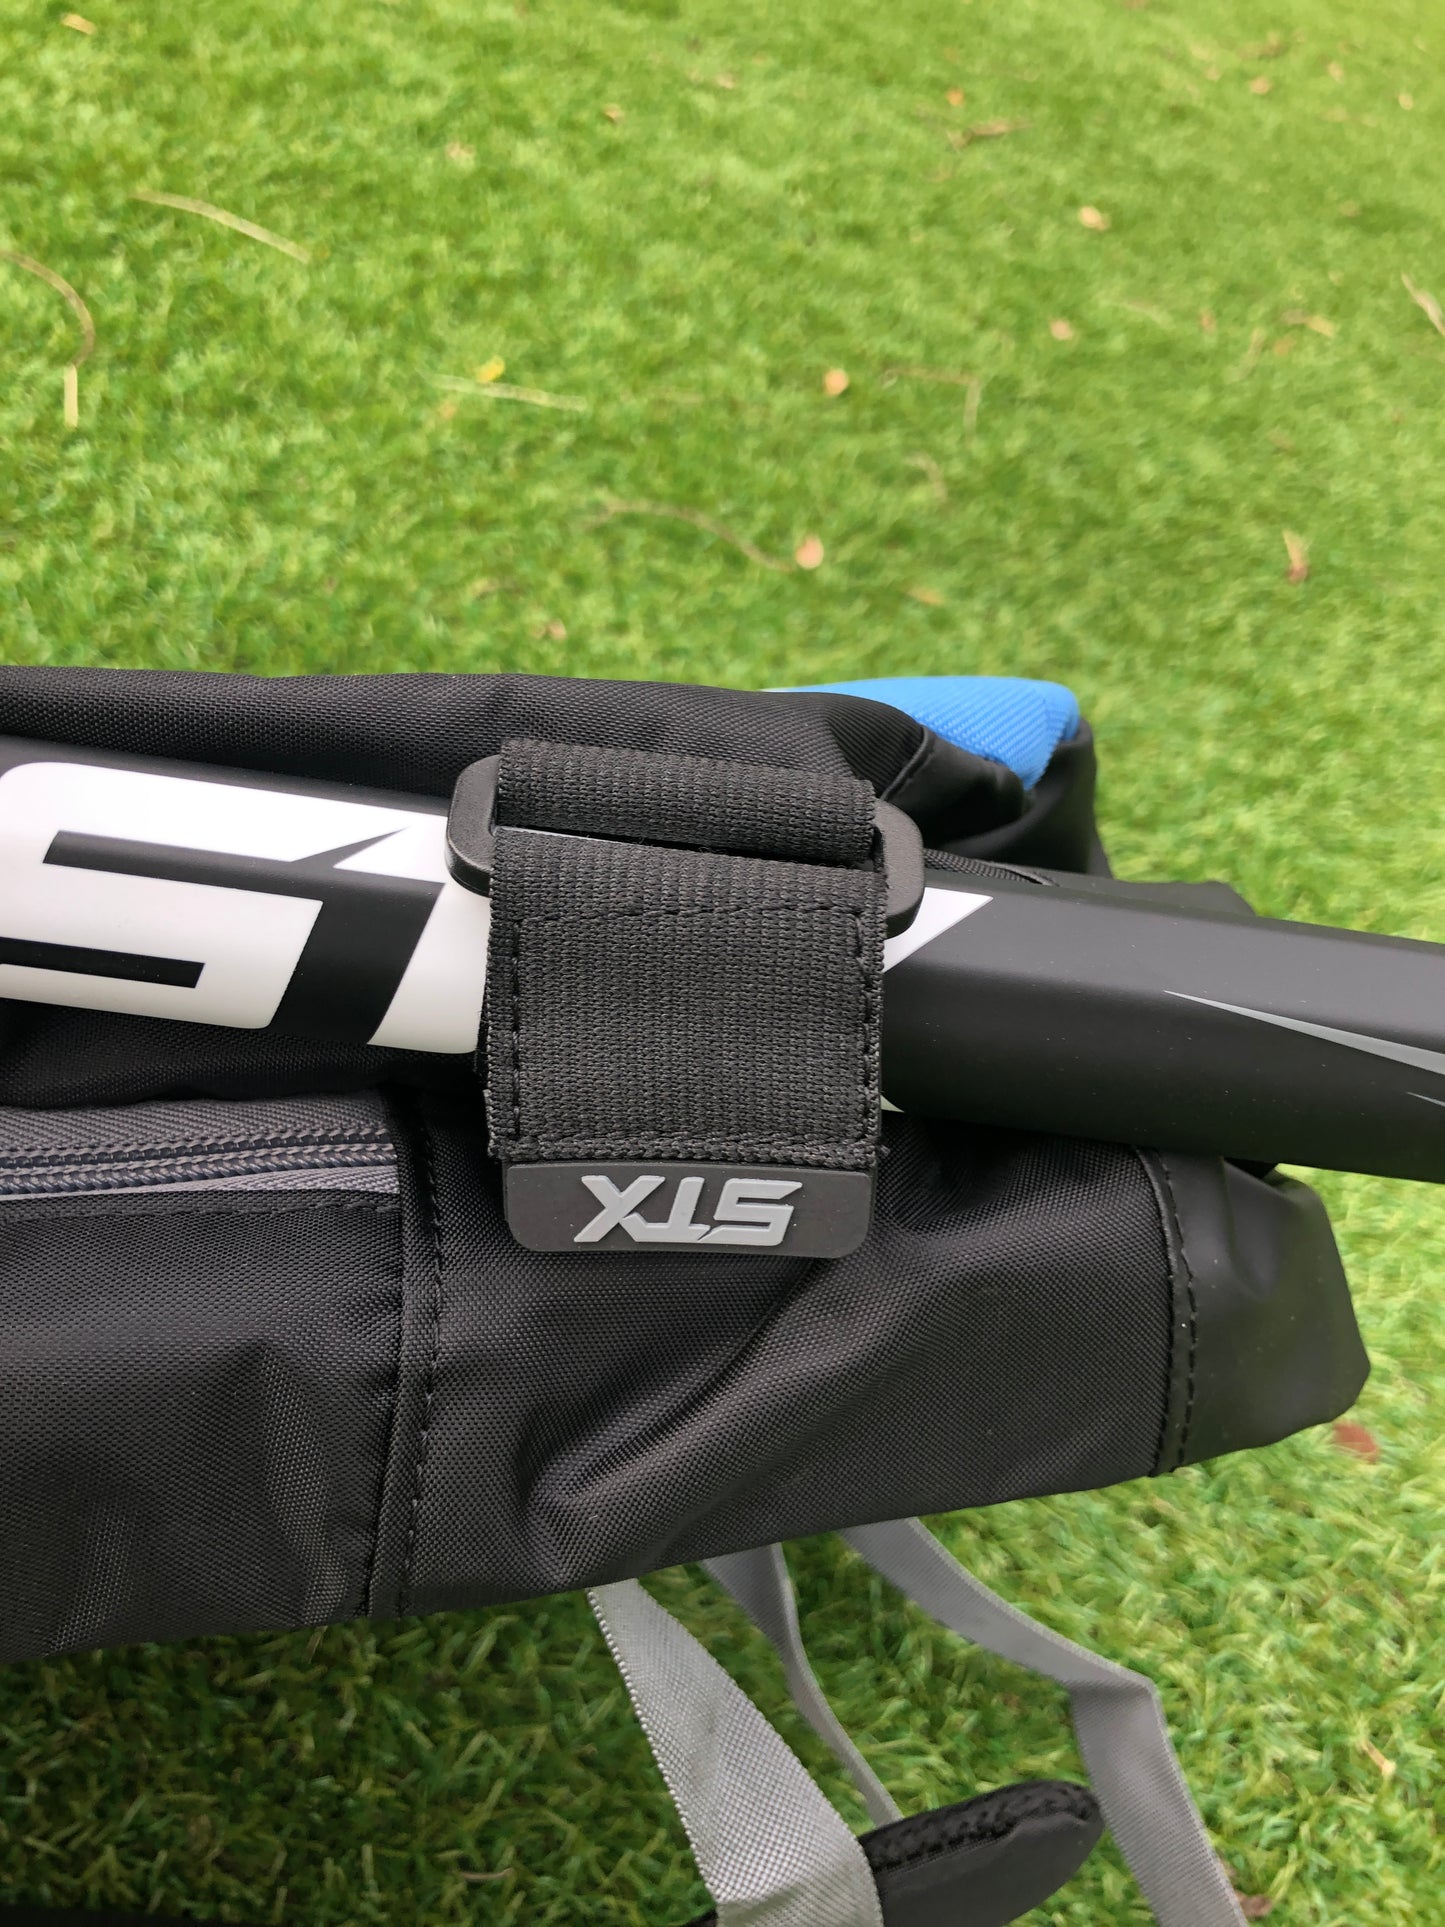 STX Sidewinder Lacrosse Backpack